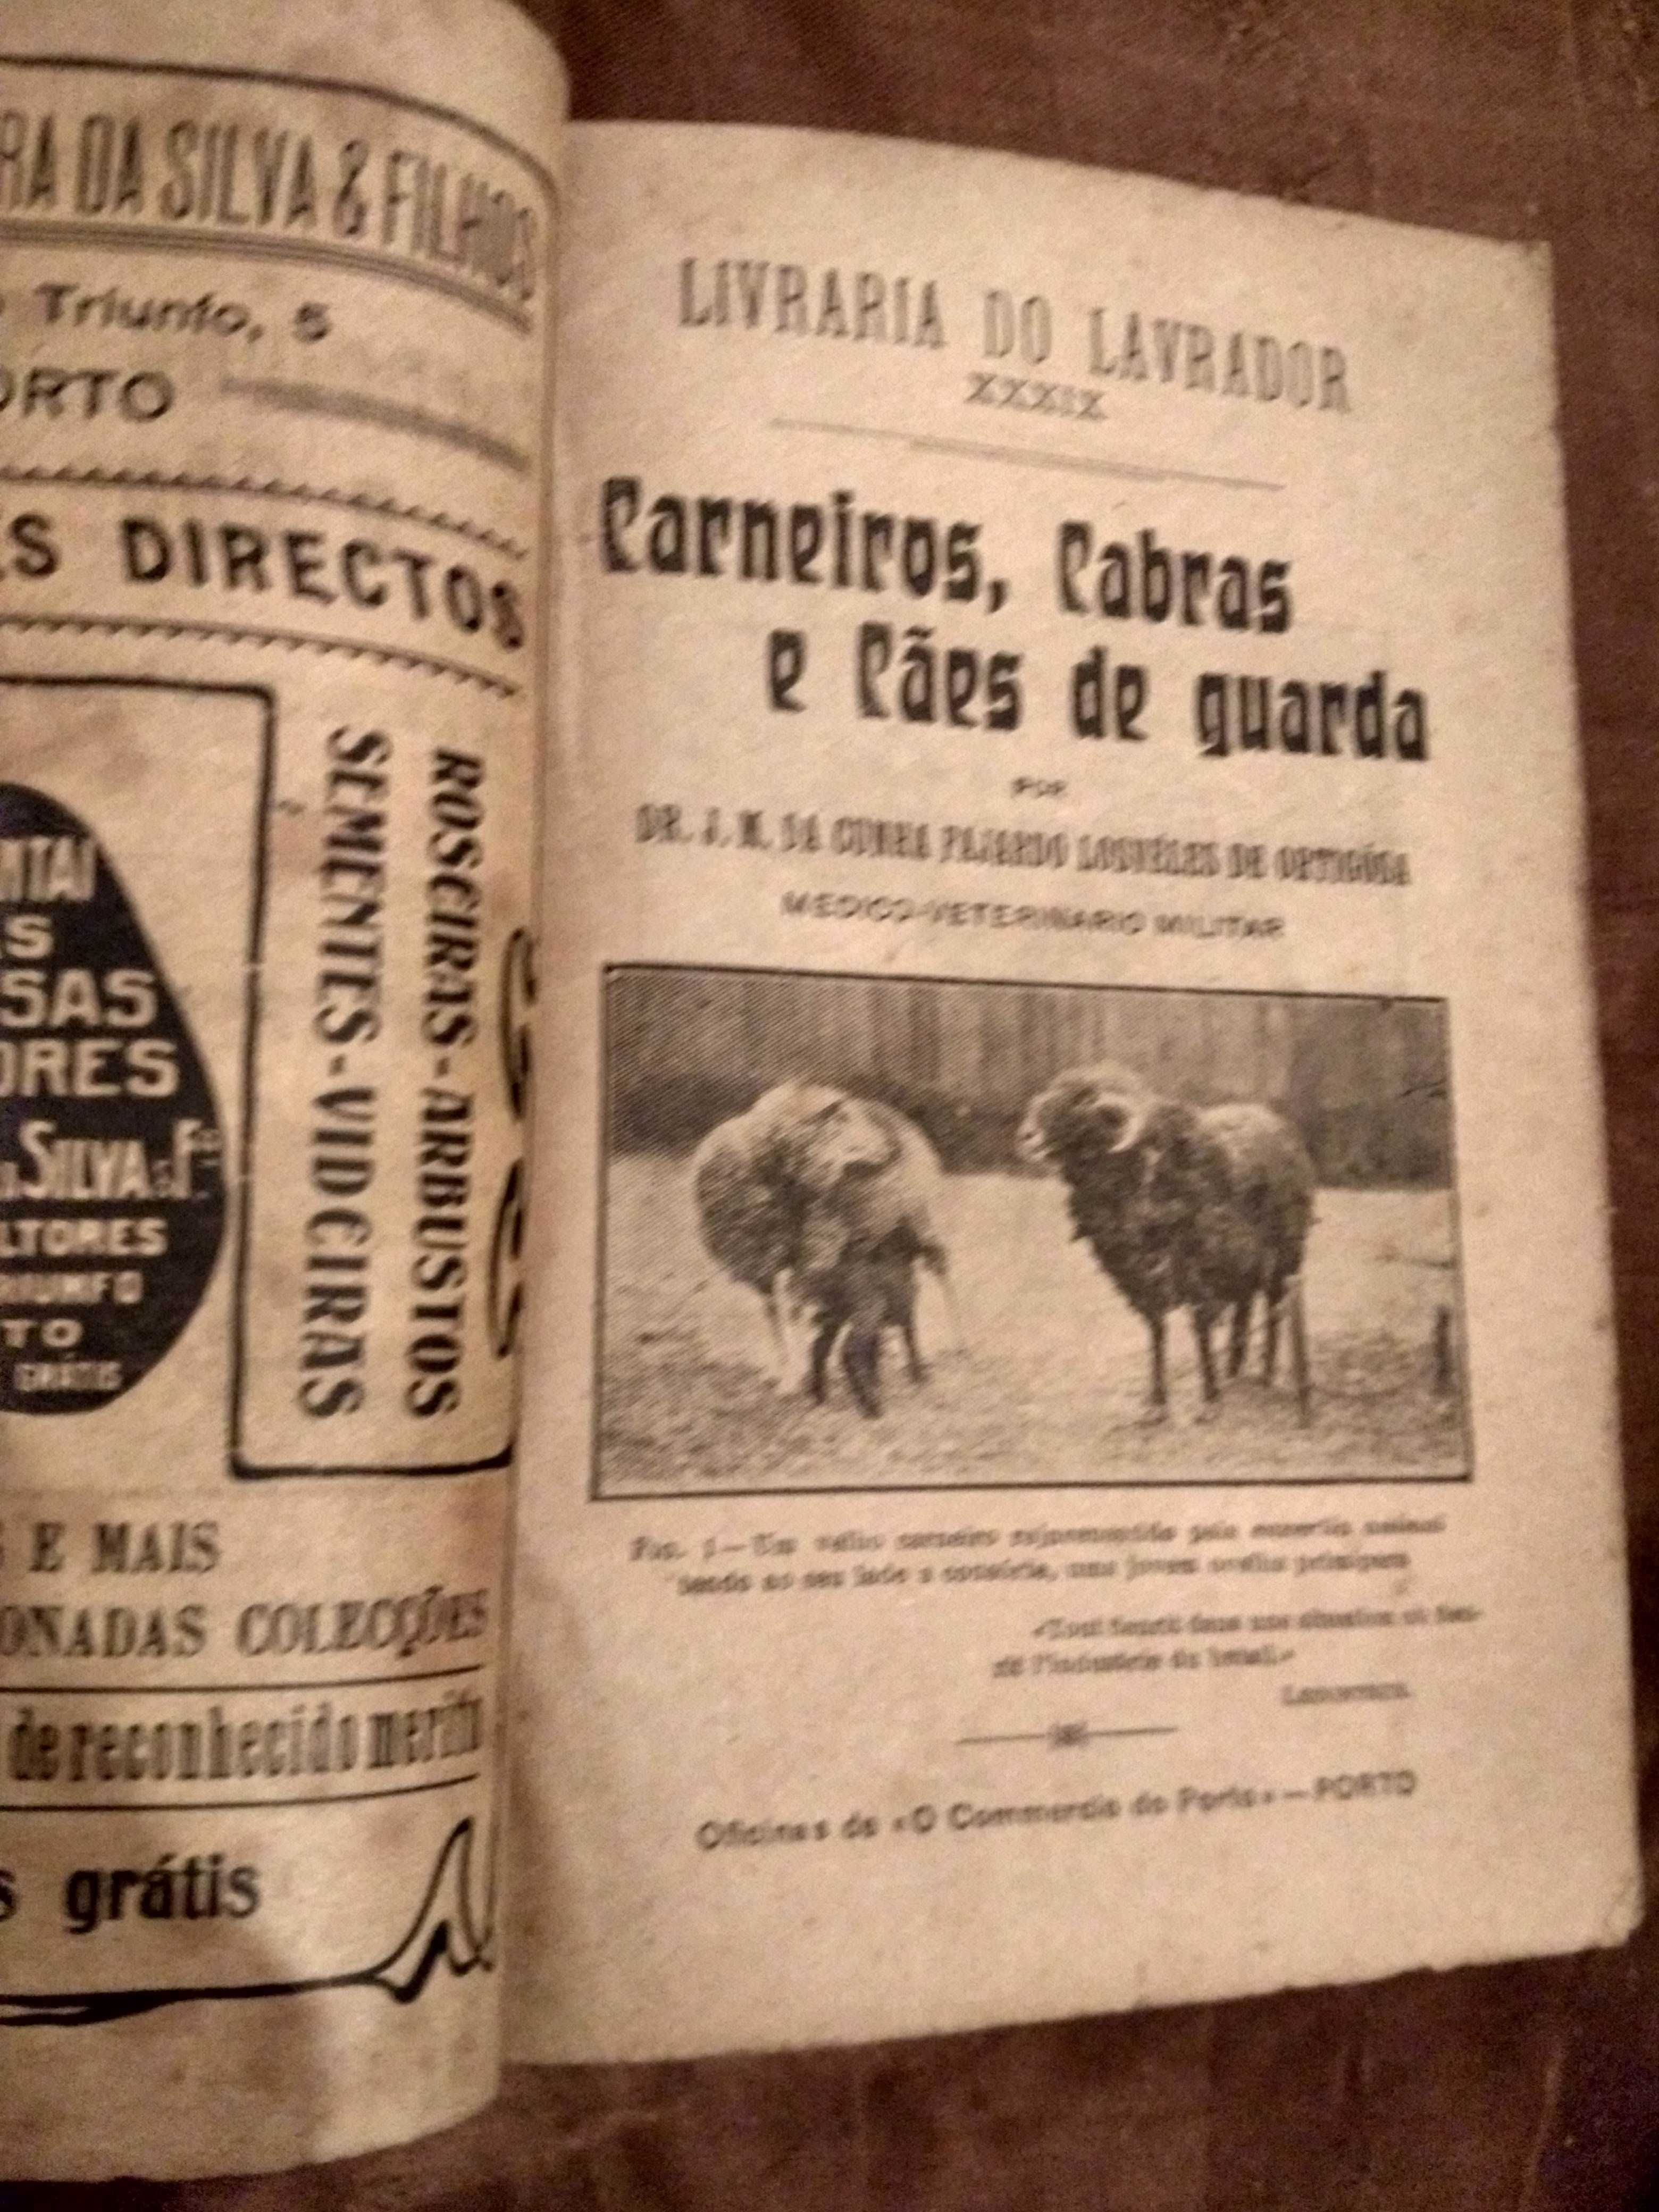 "Carneiros, Cabras e Cães de guarda" -Livraria do Lavrador- 1.ª edição